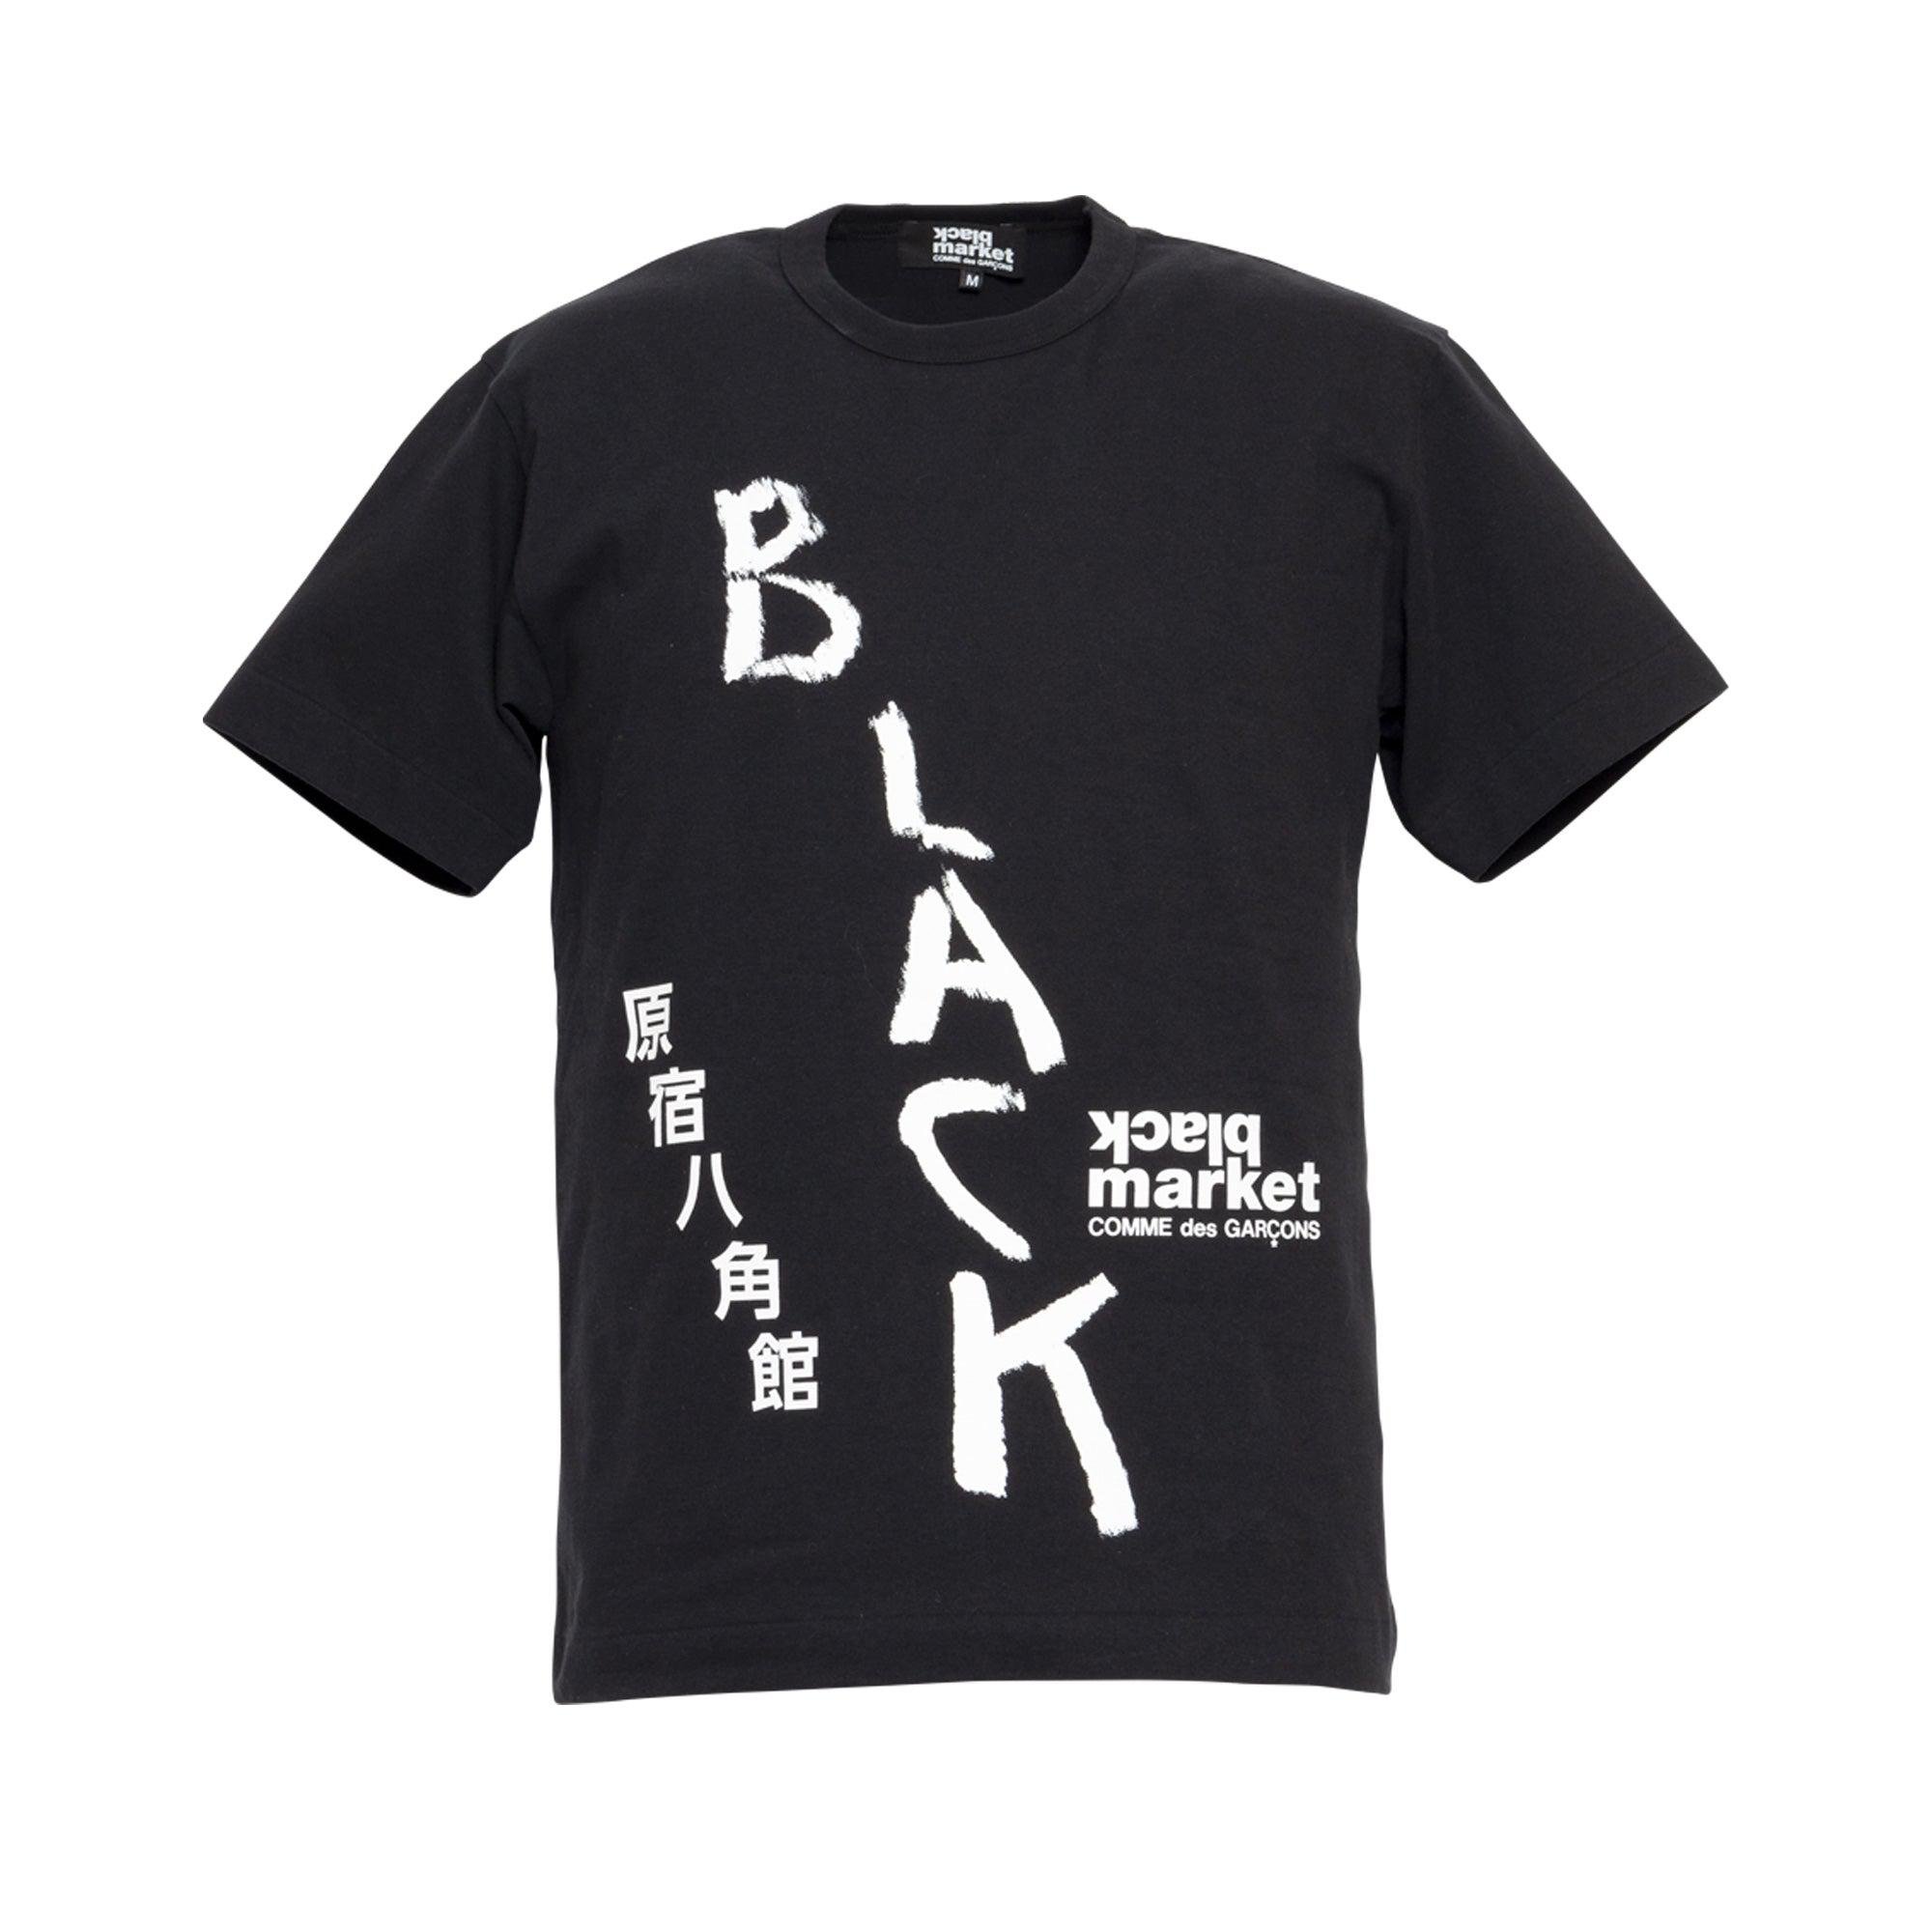 Comme des Garçons Black Market Print T-Shirt (Black) by BLACK MARKET